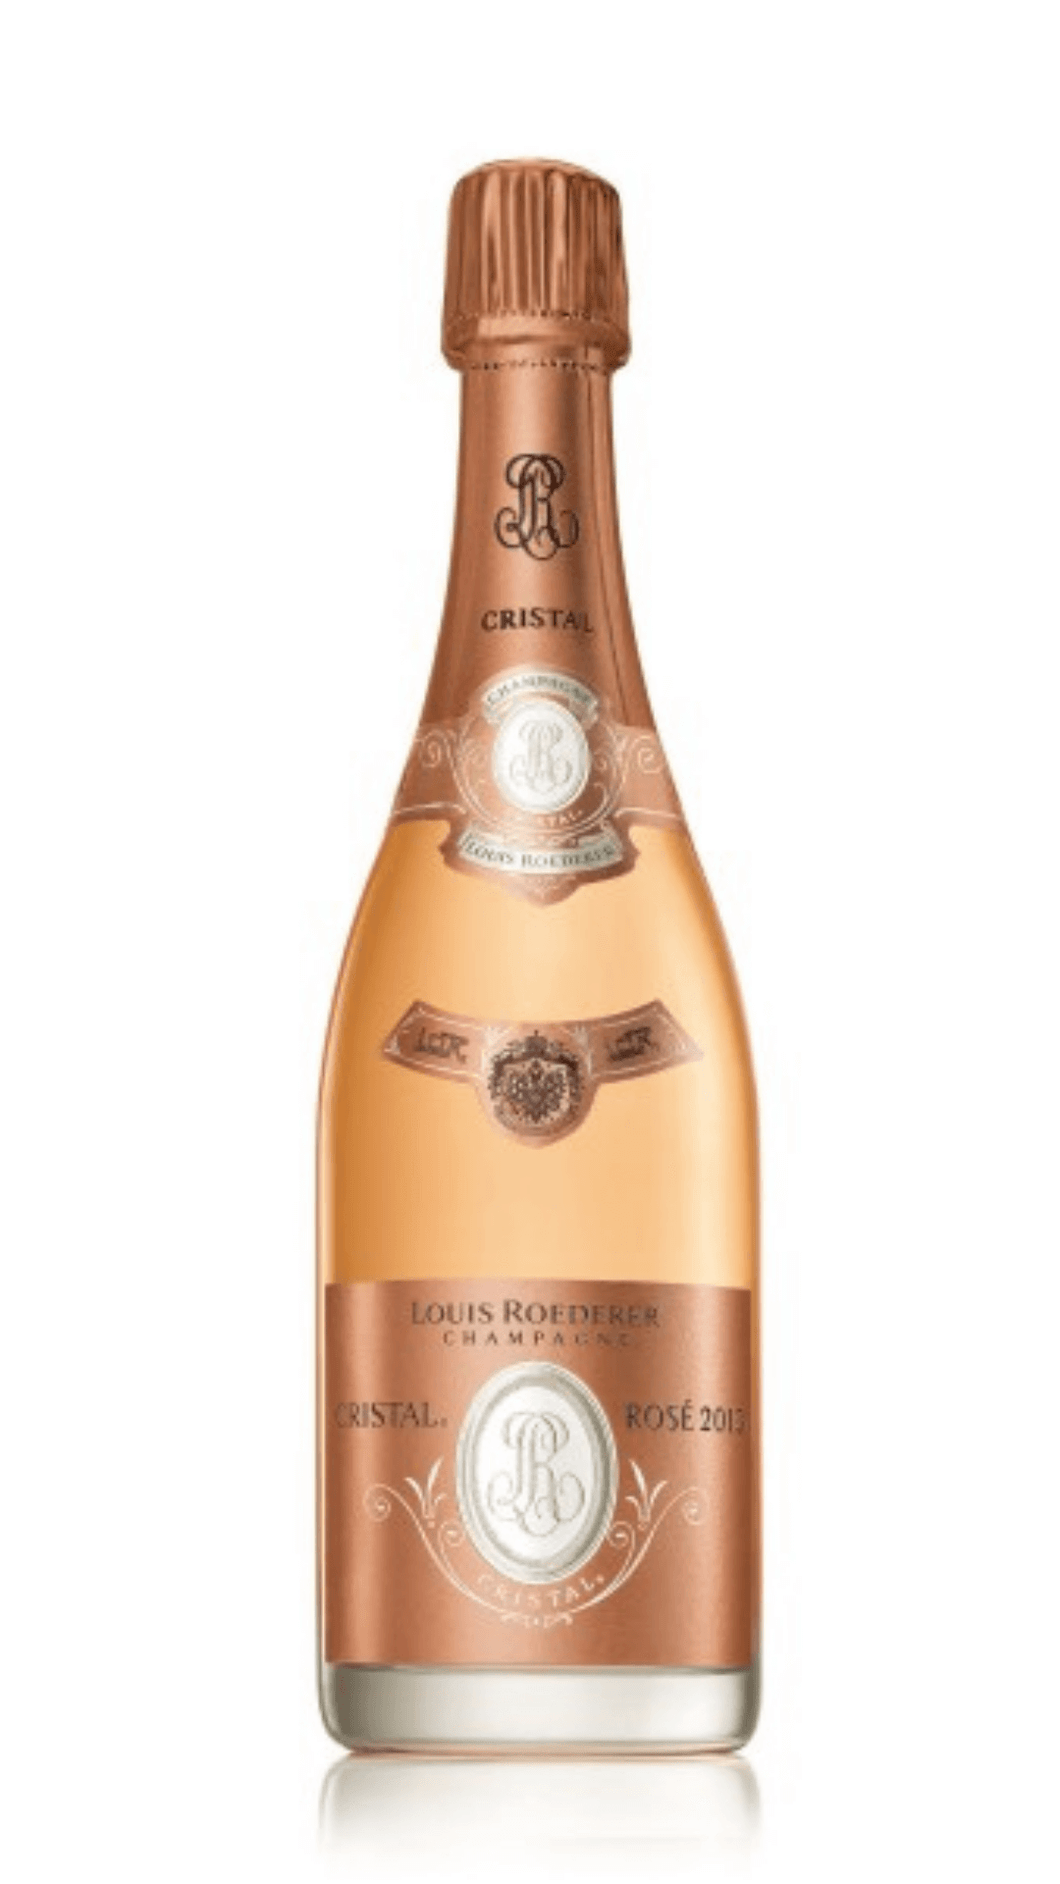 Champagne Cristal Rosé 2013 Louis Roederer Box set